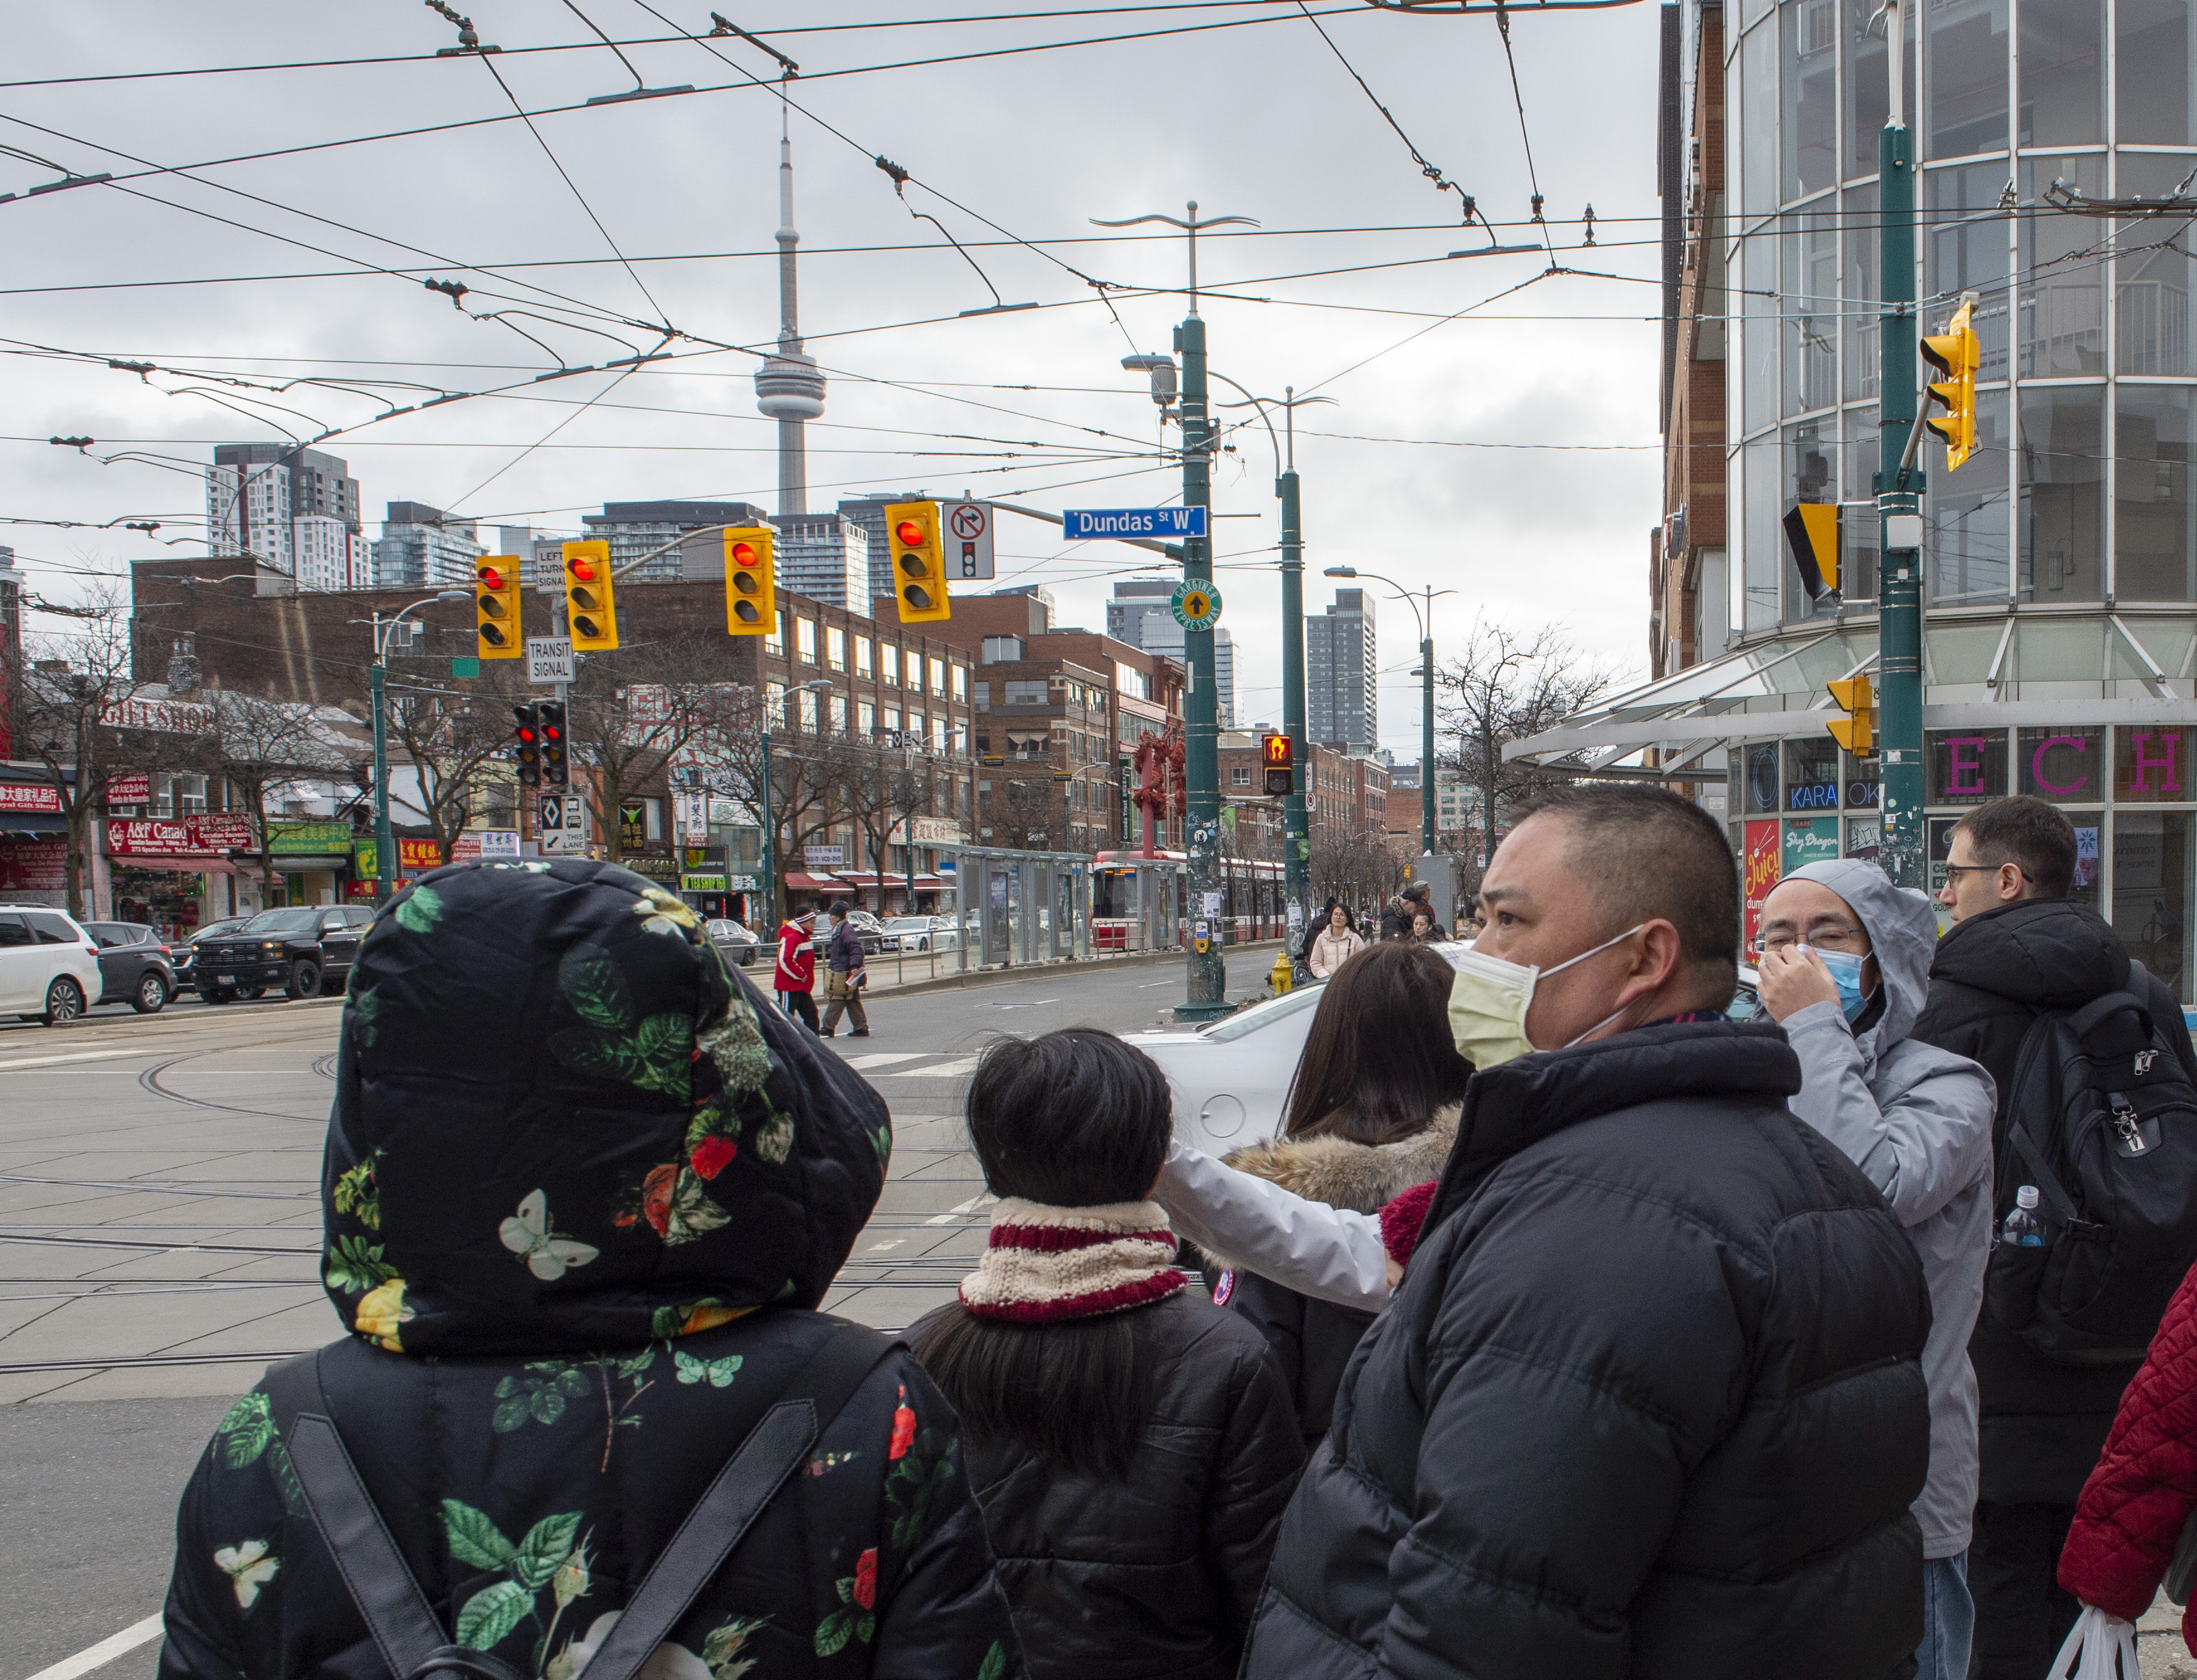 بعض المارّة في أحد شوارع تورونتو وضعوا كمّامات للوقاية من فيروس كورونا/Frank Gunn/CP